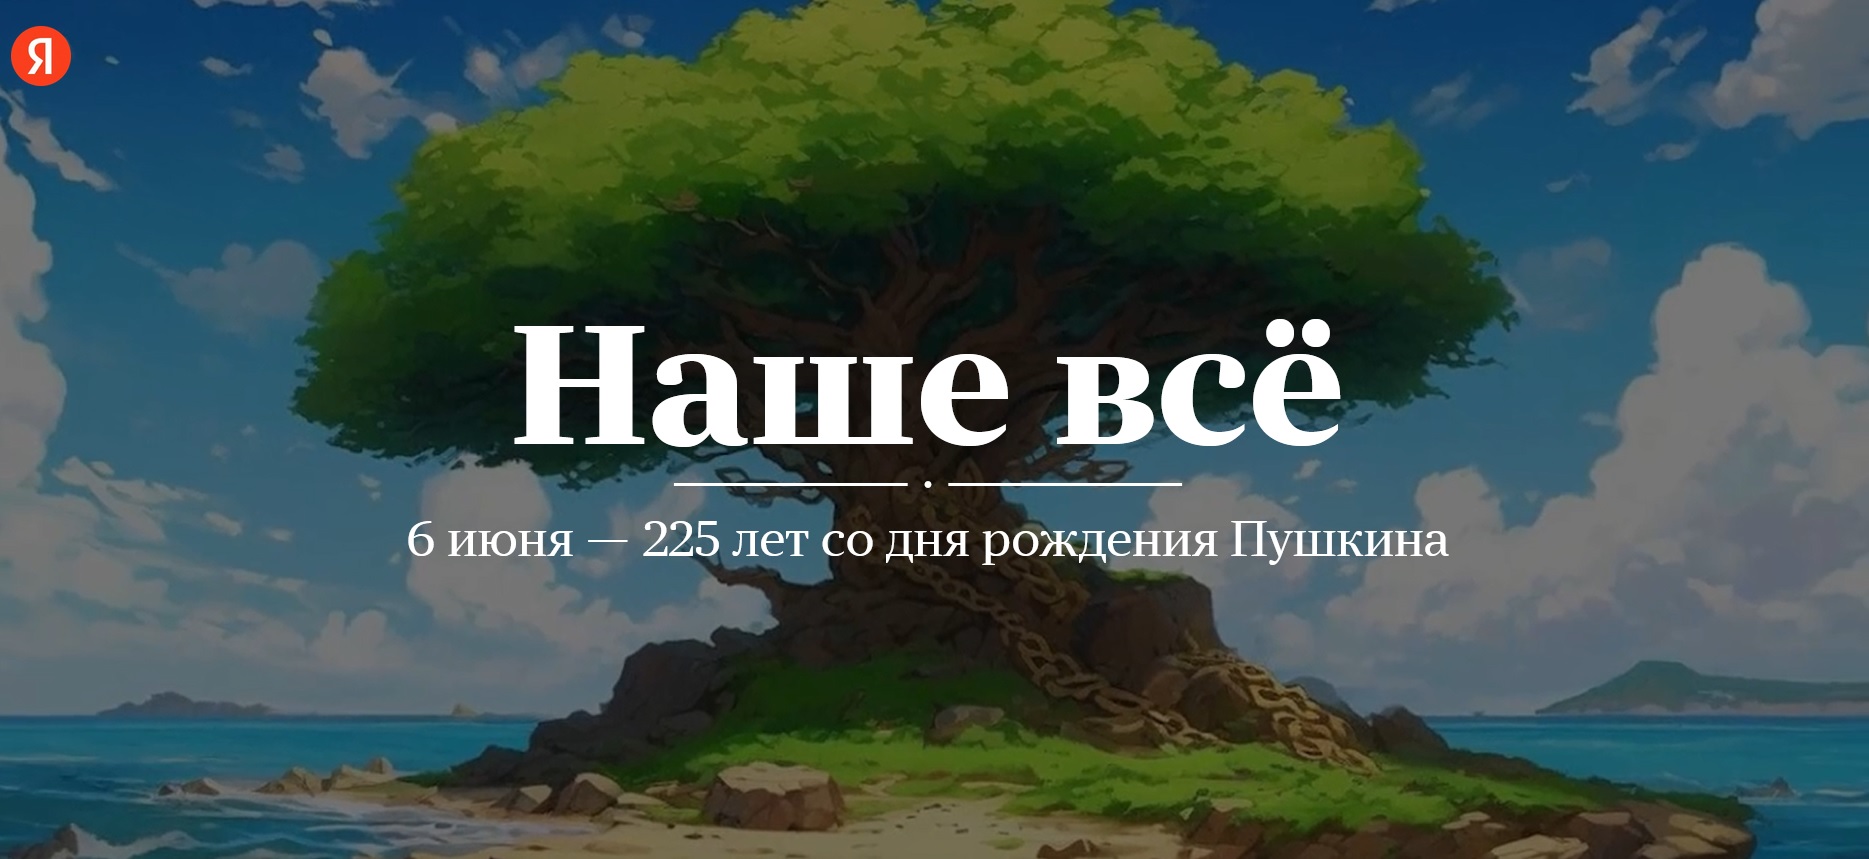 Проект Яндекса «Наше всё» к 225-летию Пушкина А.С.